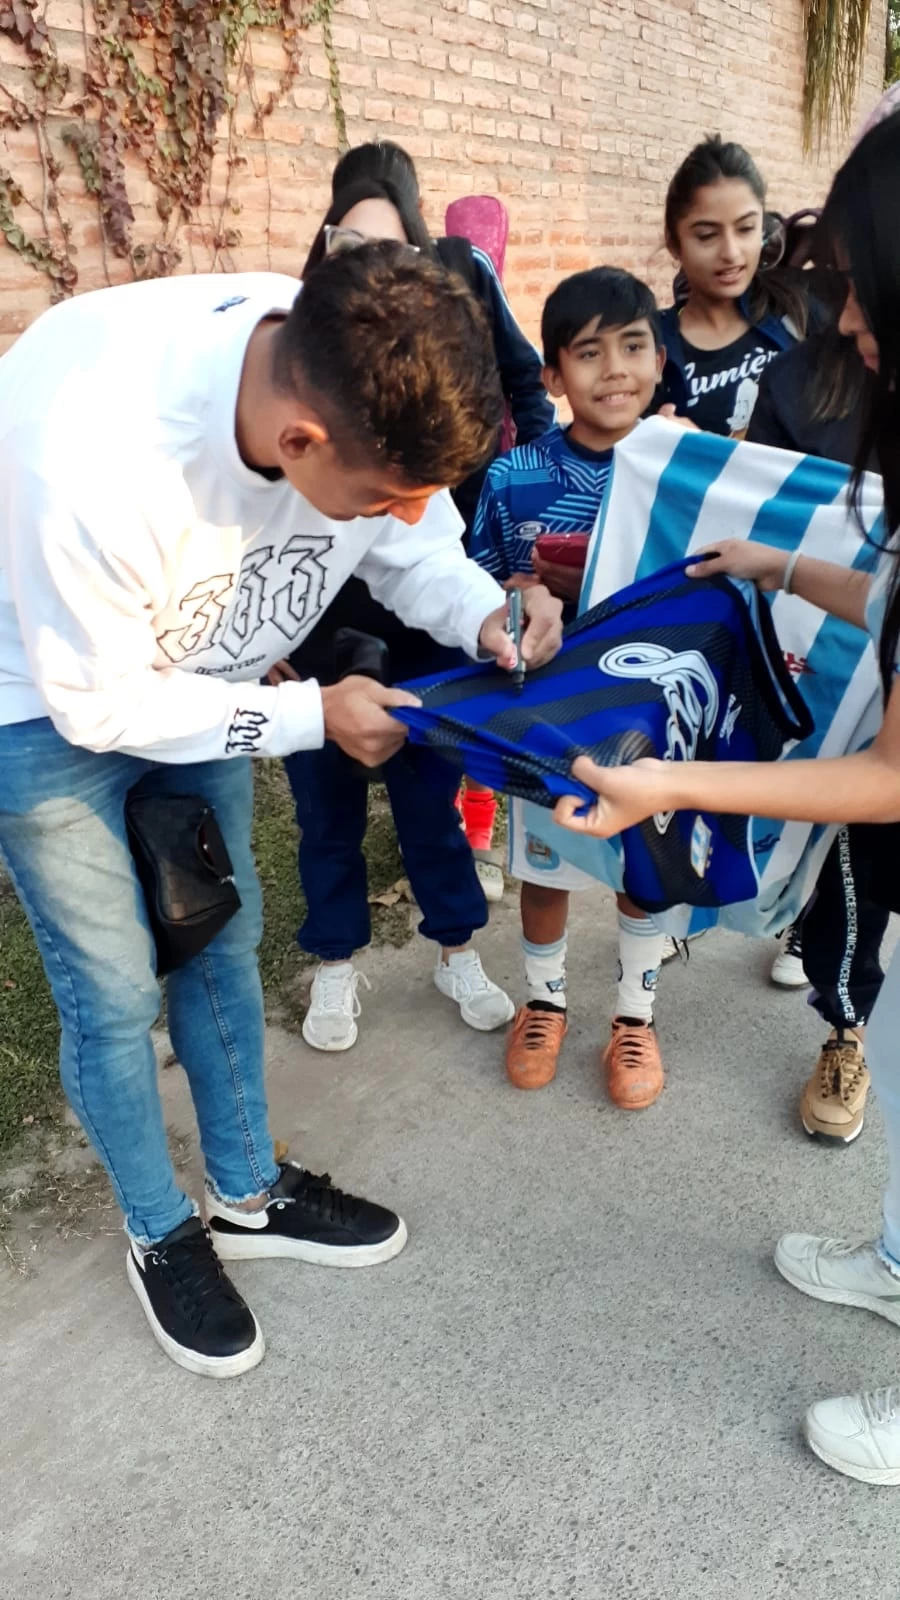 REQUERIDO. Antes de regresar a casa, Orihuela bajó del auto y firmó varias camisetas, se sacó fotos y envió varios saludos.  